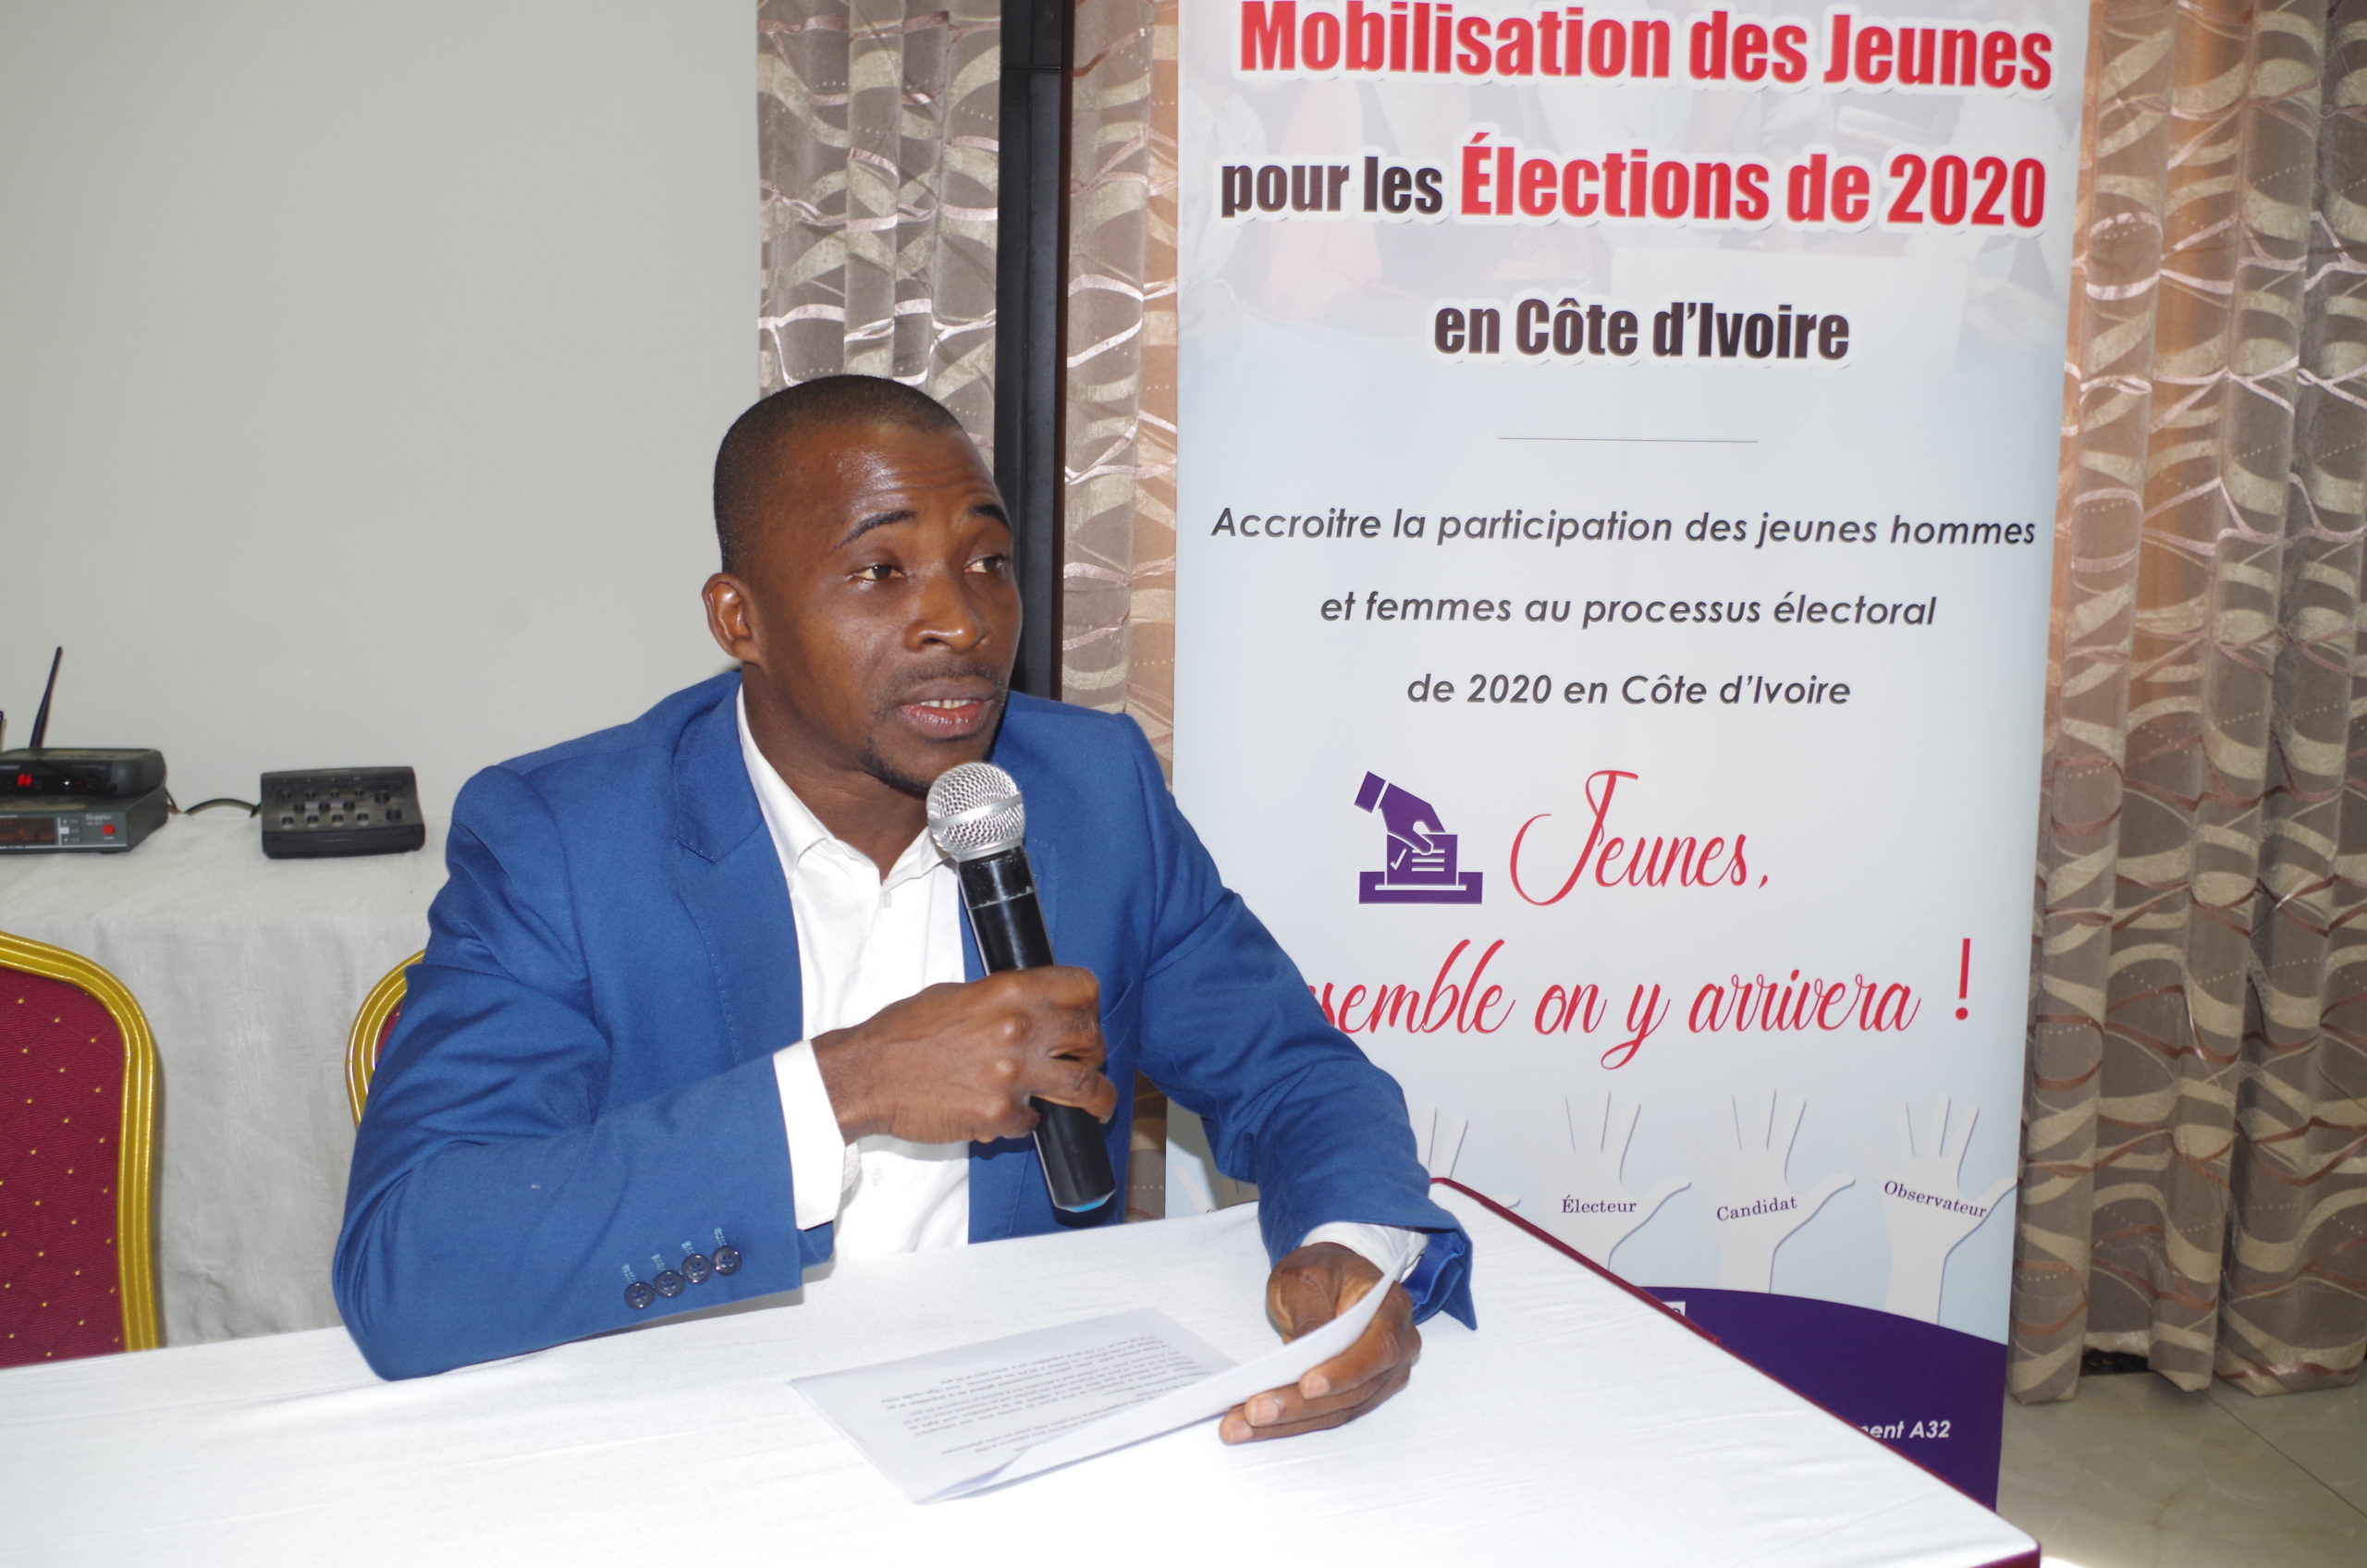 Le FOSCAO-CI demande aux acteurs politiques de privilégier le dialogue afin d’éviter à la Côte d’Ivoire une autre crise post-électorale